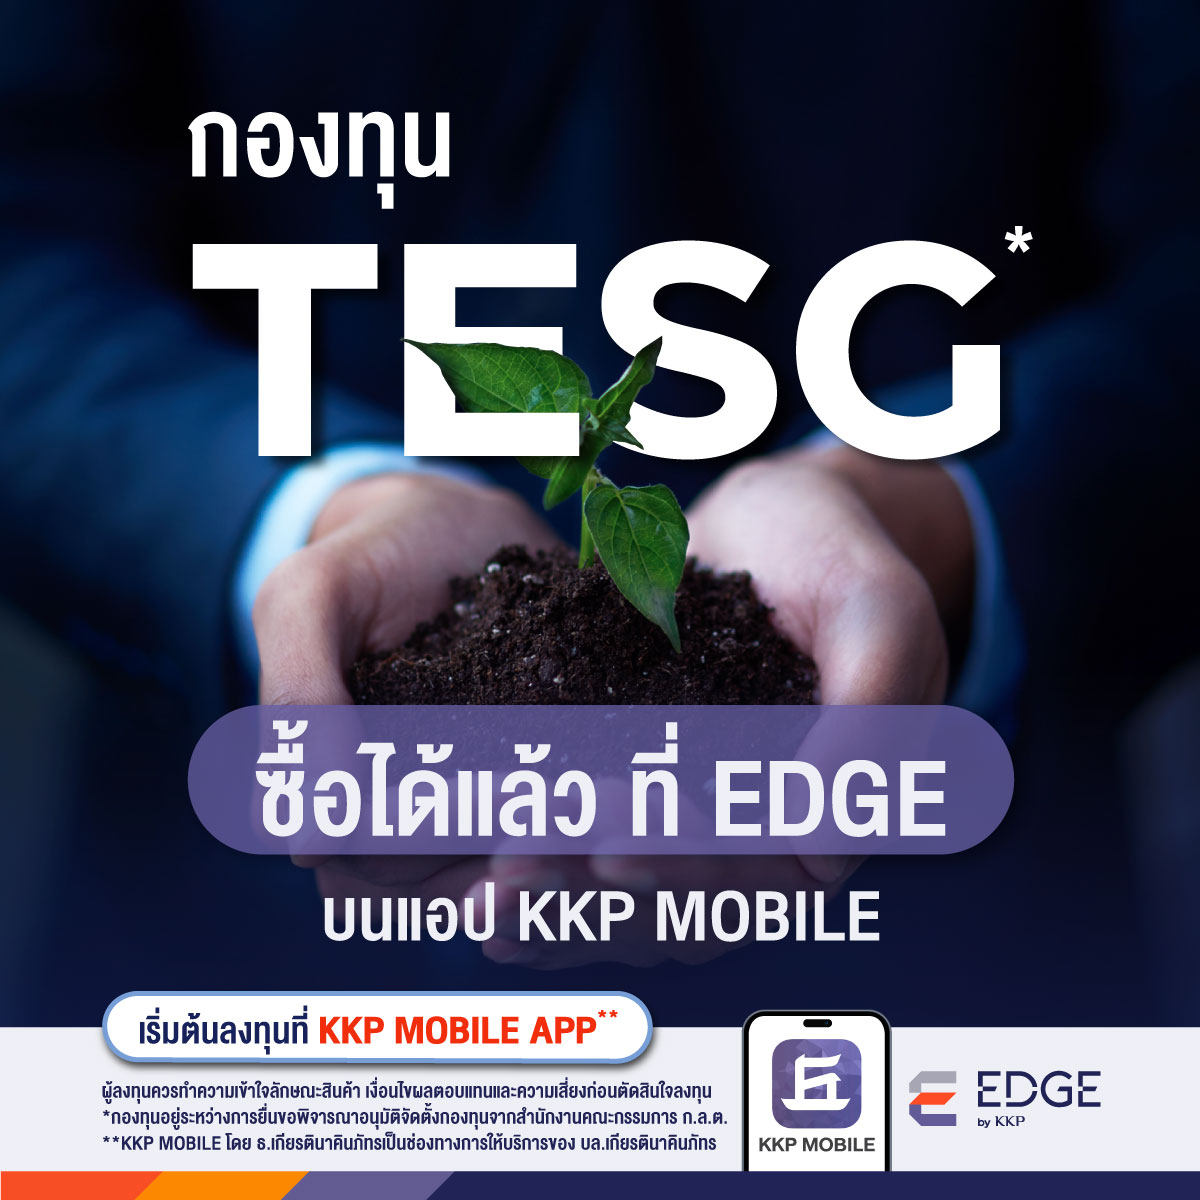 ซื้อกองทุน ThaiESG (TESG) ได้แล้ววันนี้ ที่บัญชีลงทุน EDGE บนแอป KKP MOBILE รับสิทธิ์ลดหย่อนภาษีเพิ่มสูงสุด 100,000 บาท